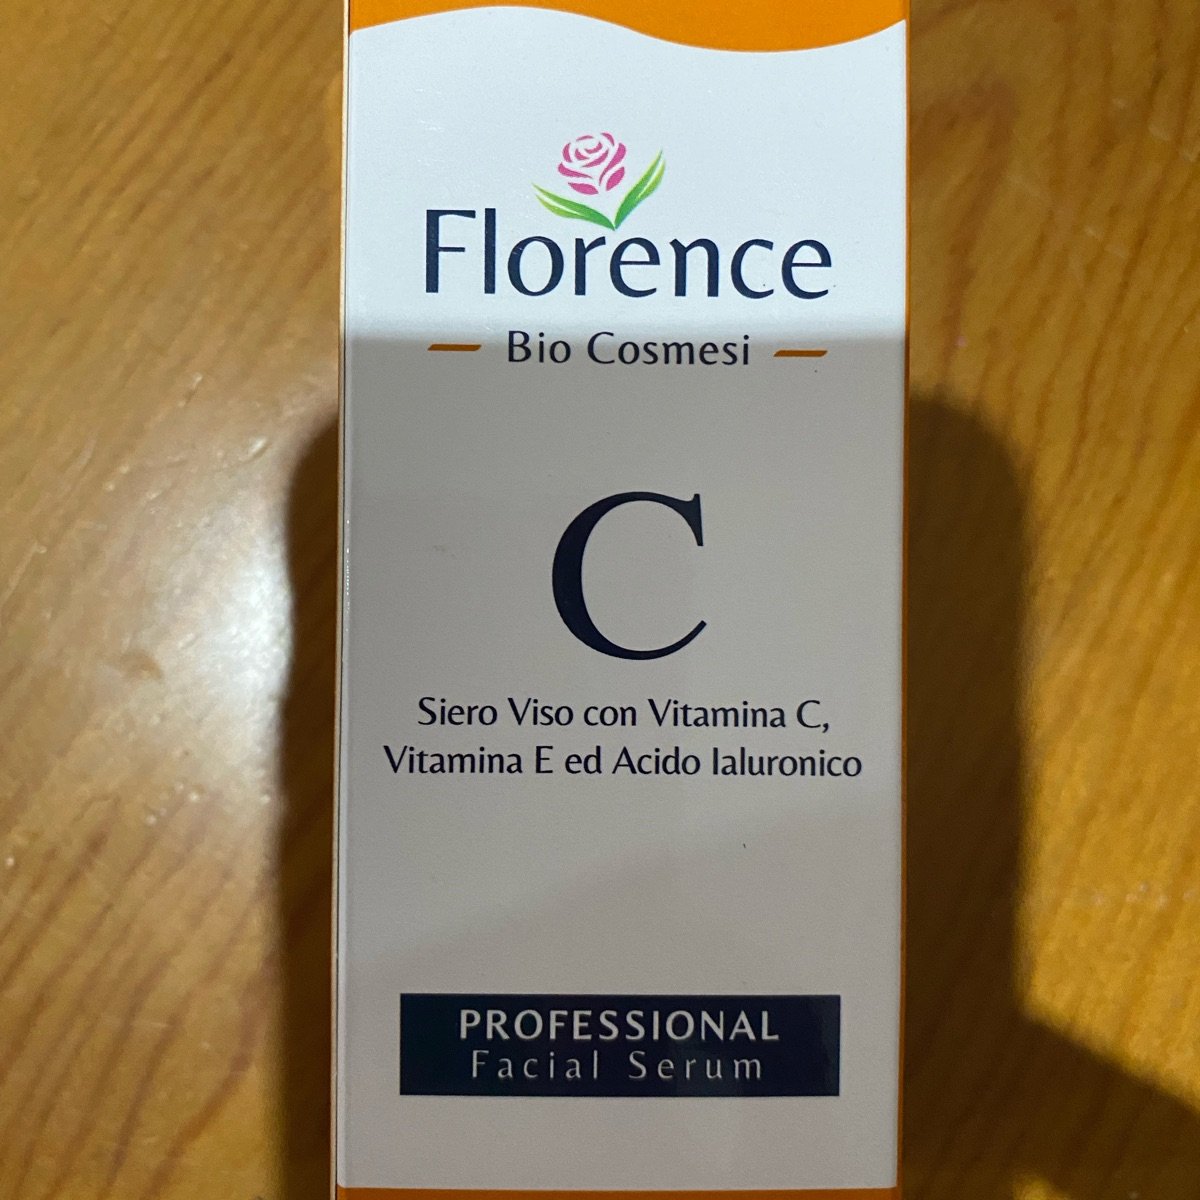 Florence Bio Cosmesi Serum vitamina C Reviews | abillion